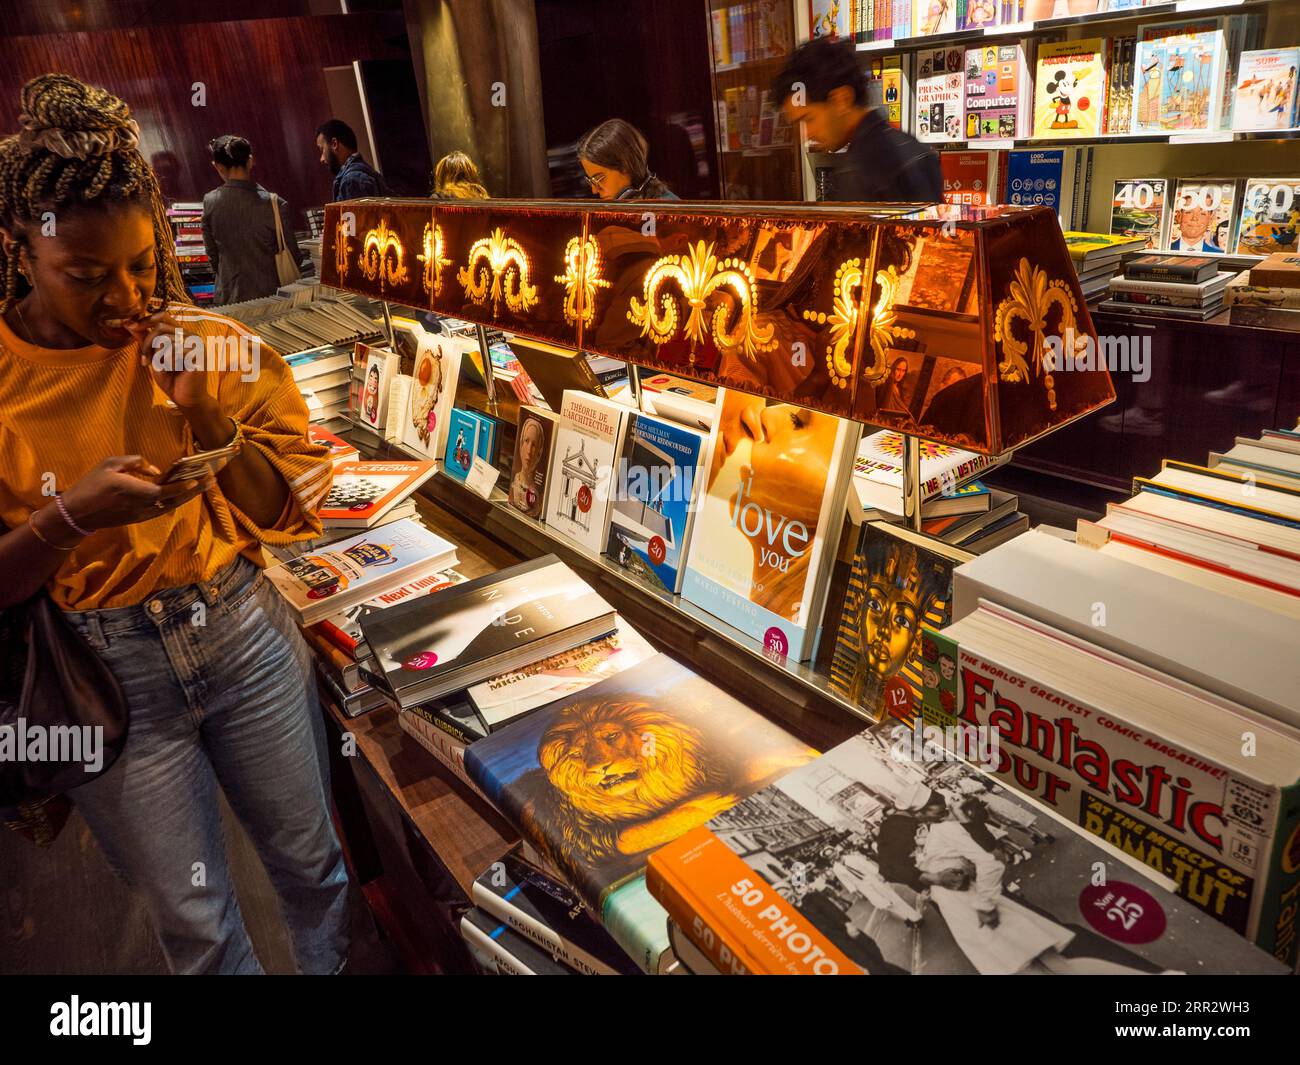 Shopping, Taschen Bookshop, Paris, France, Europe, UE. Banque D'Images